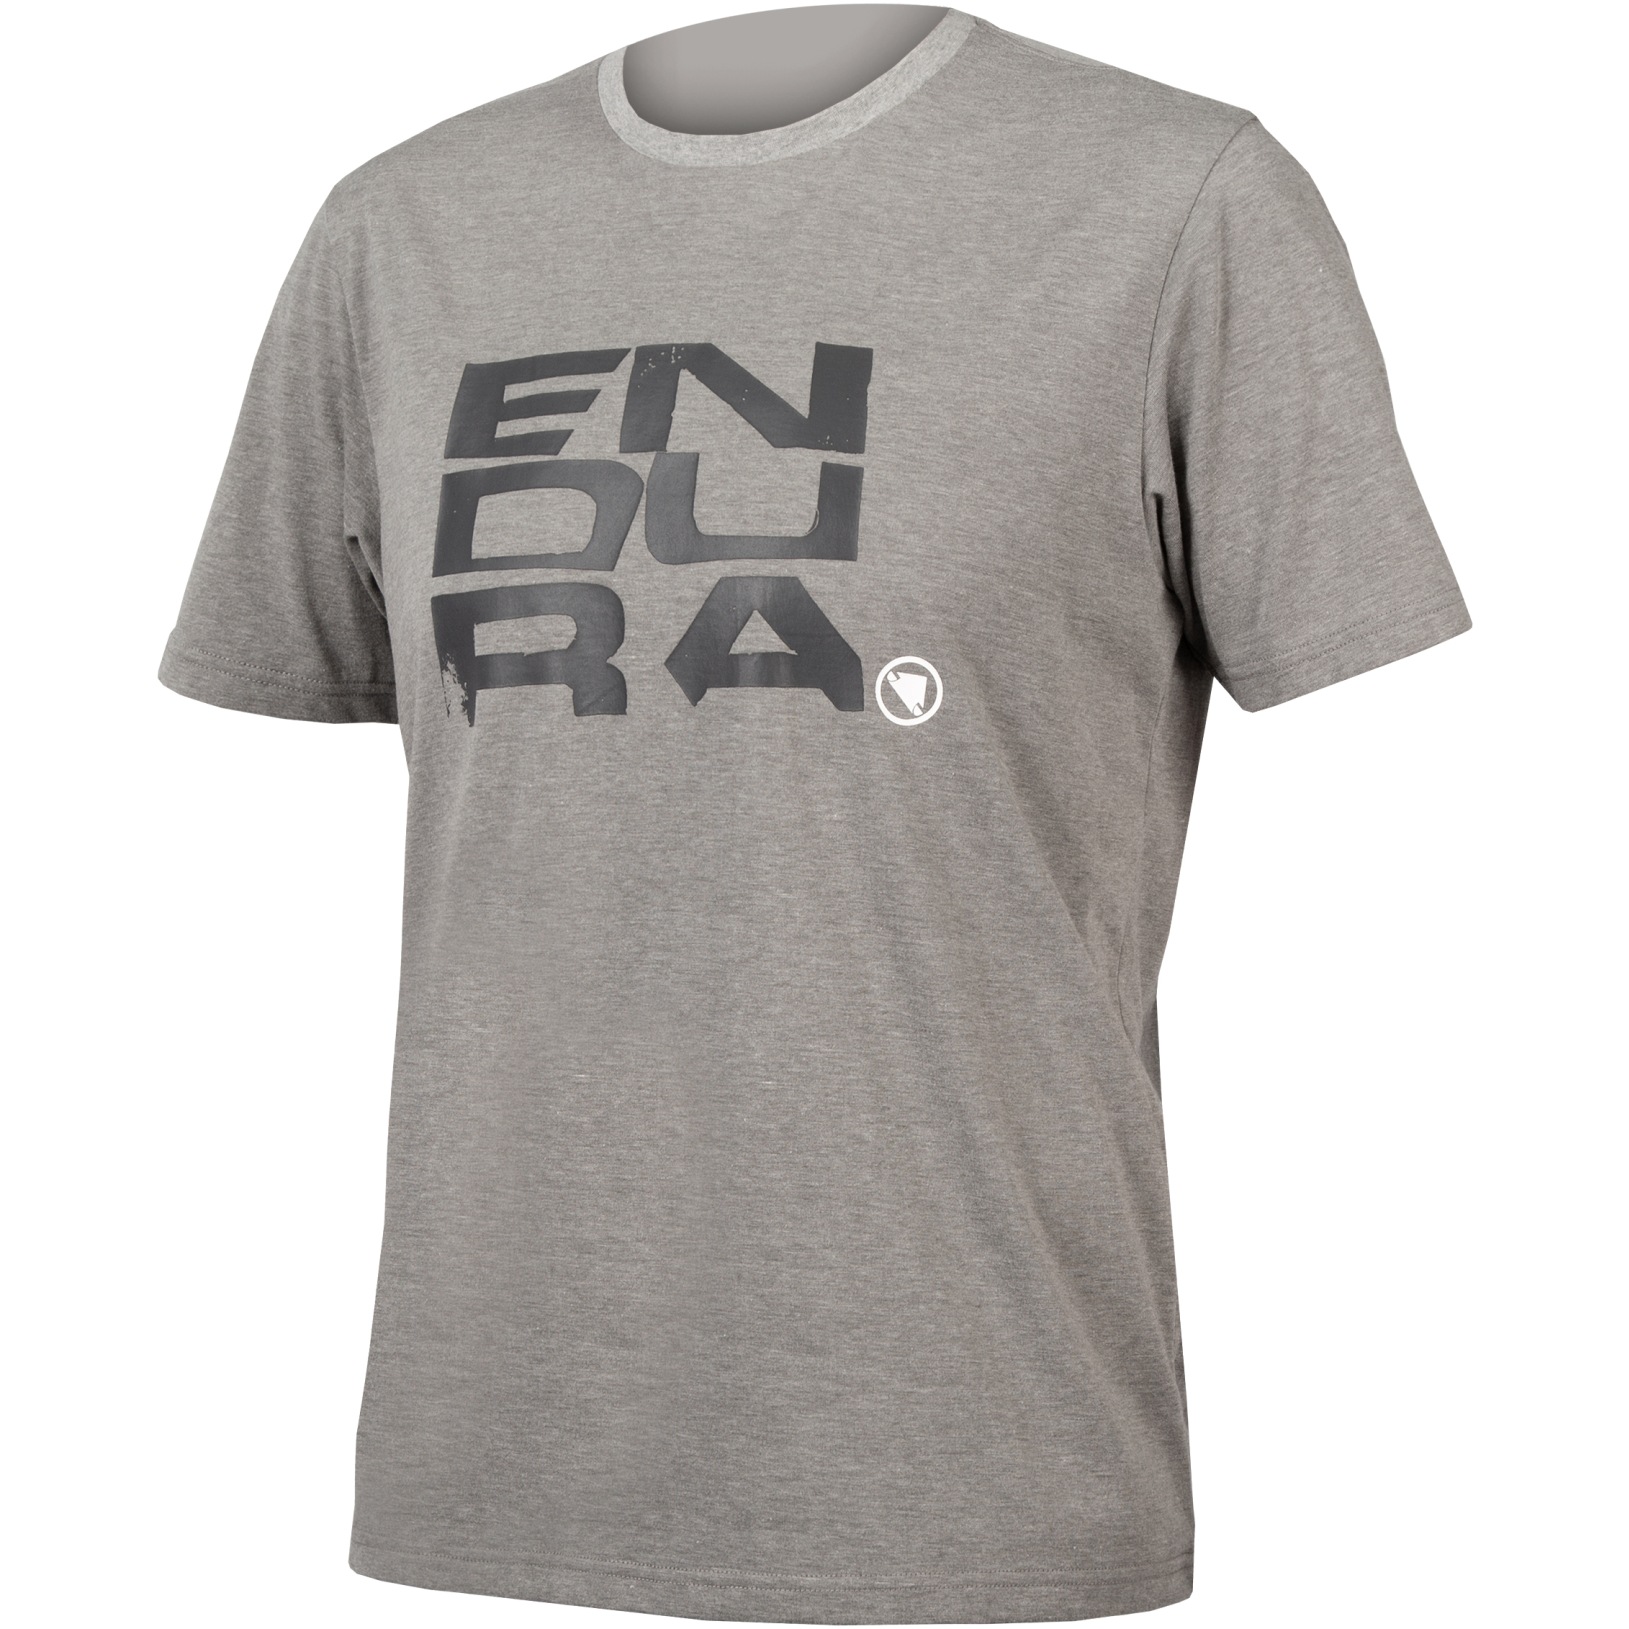 Produktbild von Endura One Clan Organic Stacked T-Shirt - grau